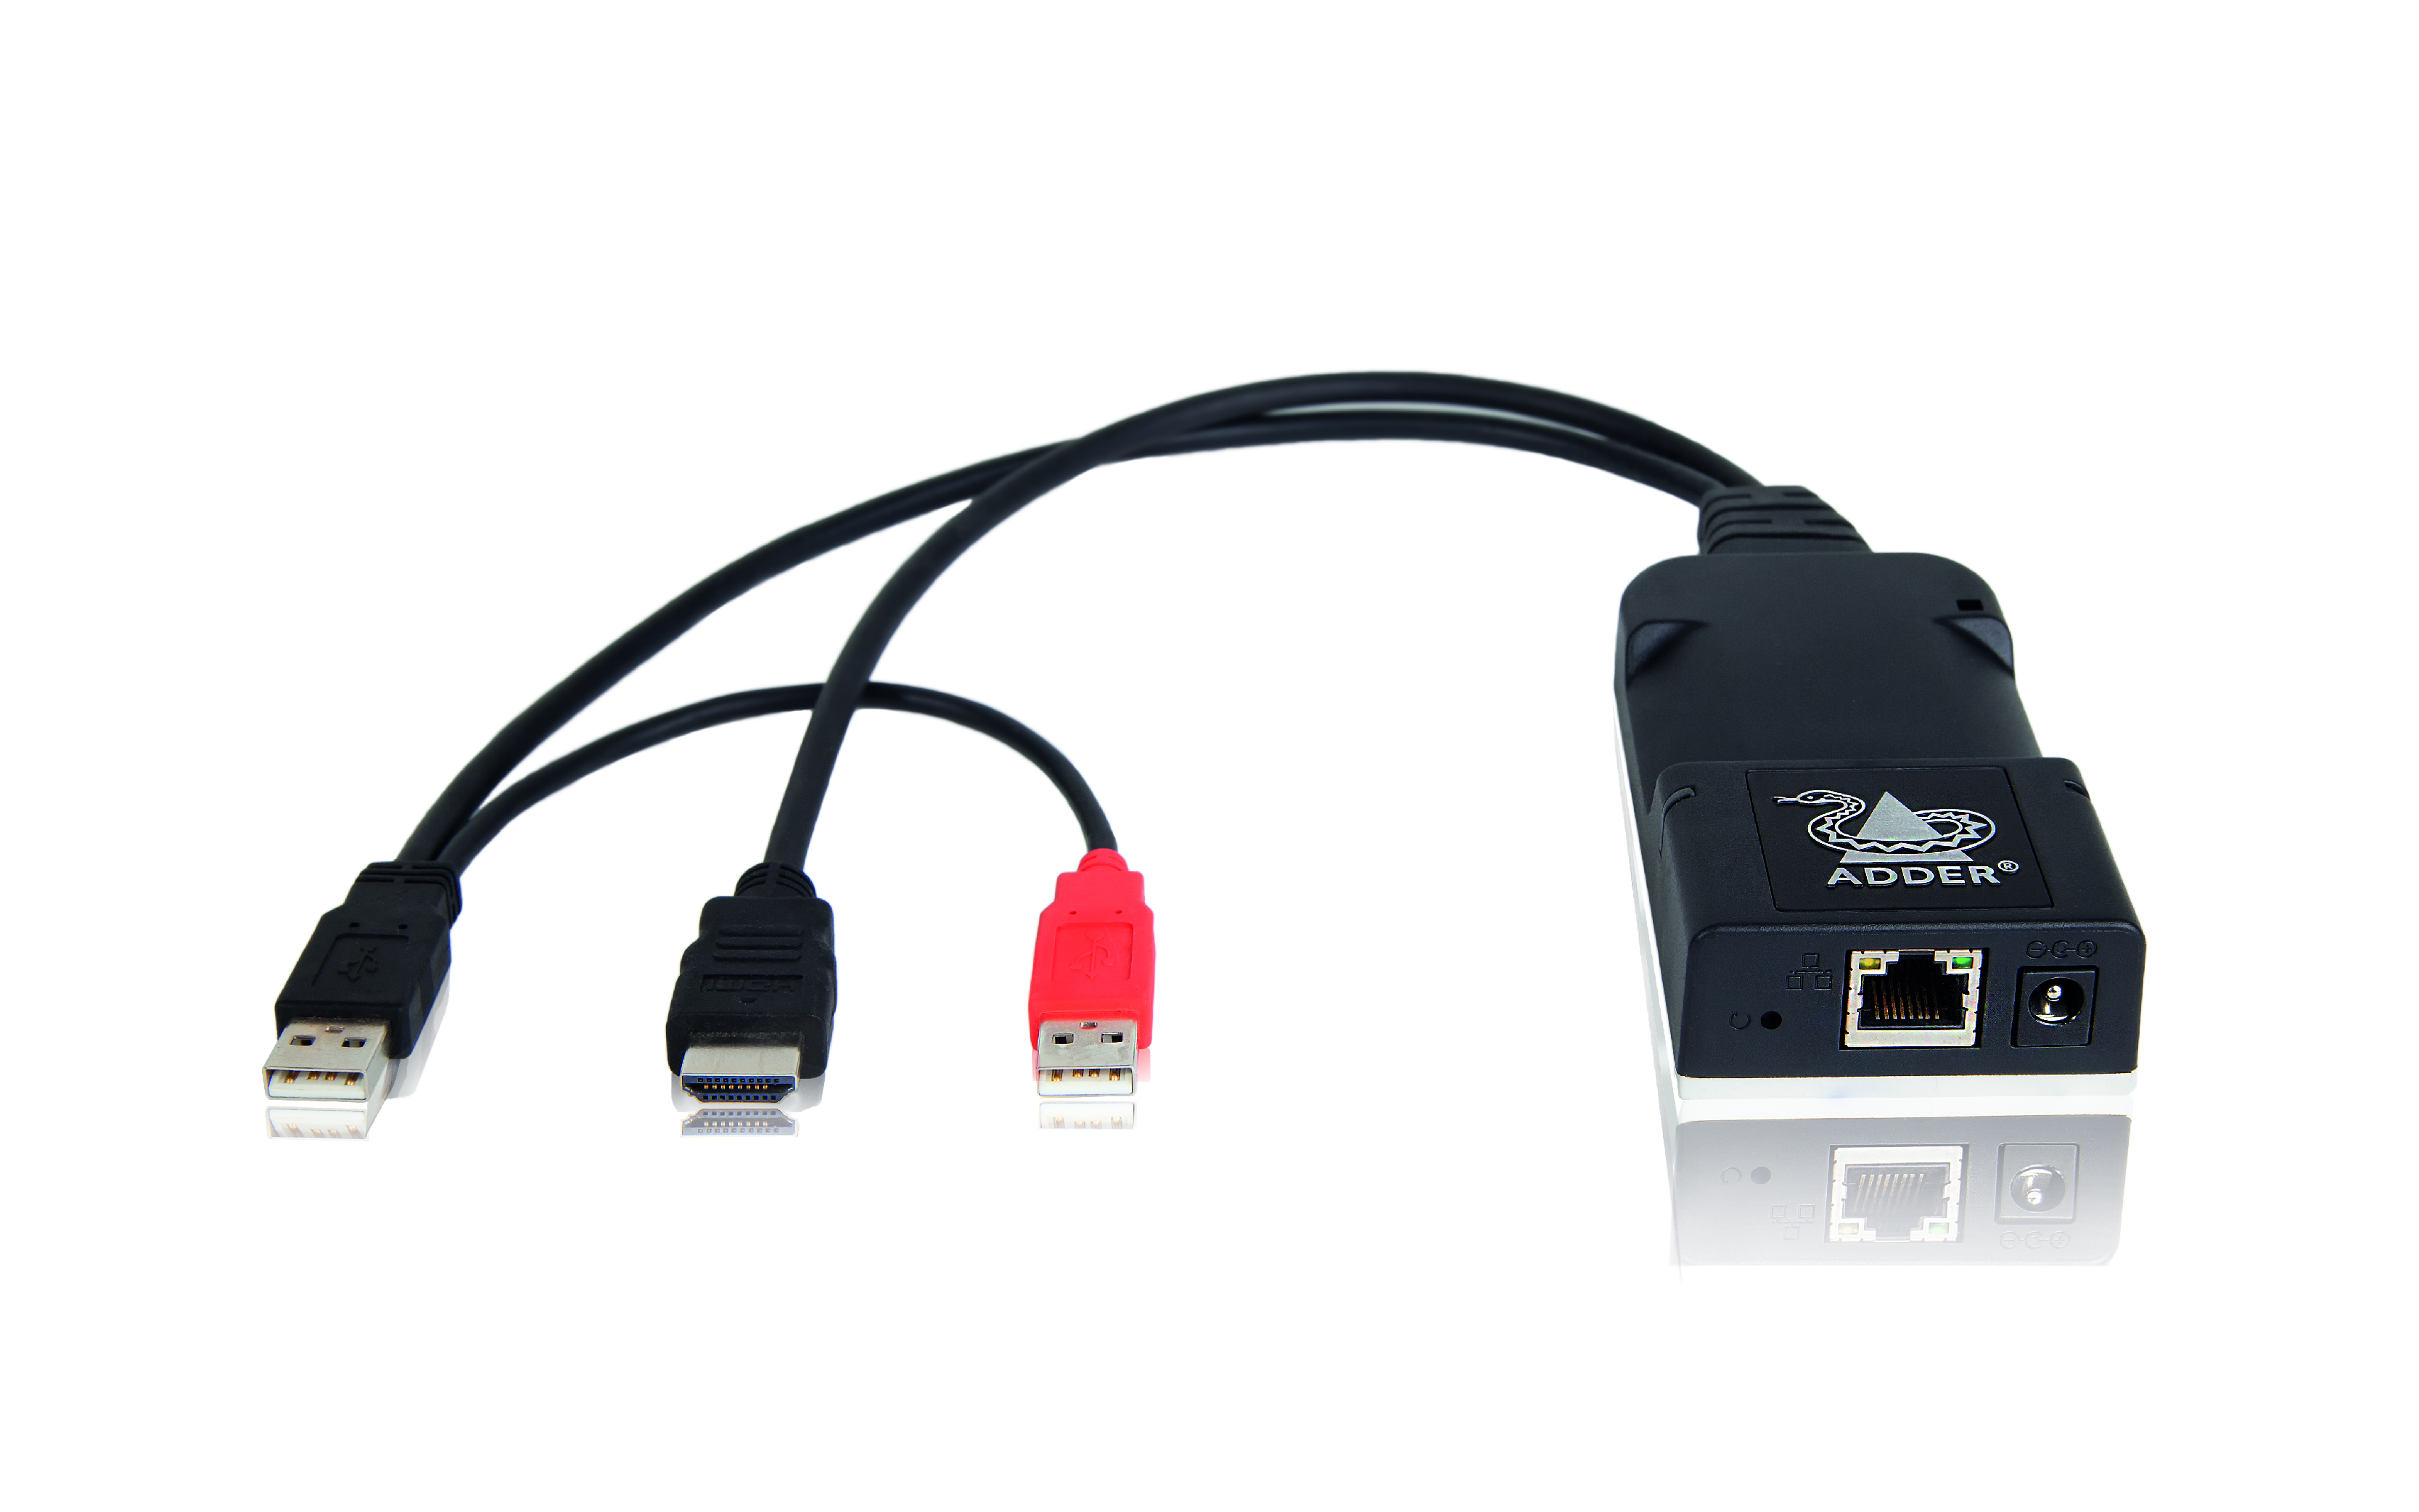 ALIF101T-HDMI - ADDERLink Infinity 101T HDMI CAM Modul, ALIF101T-HDMI, Adder Technology, Extender Shop günstig kaufen - Leunig